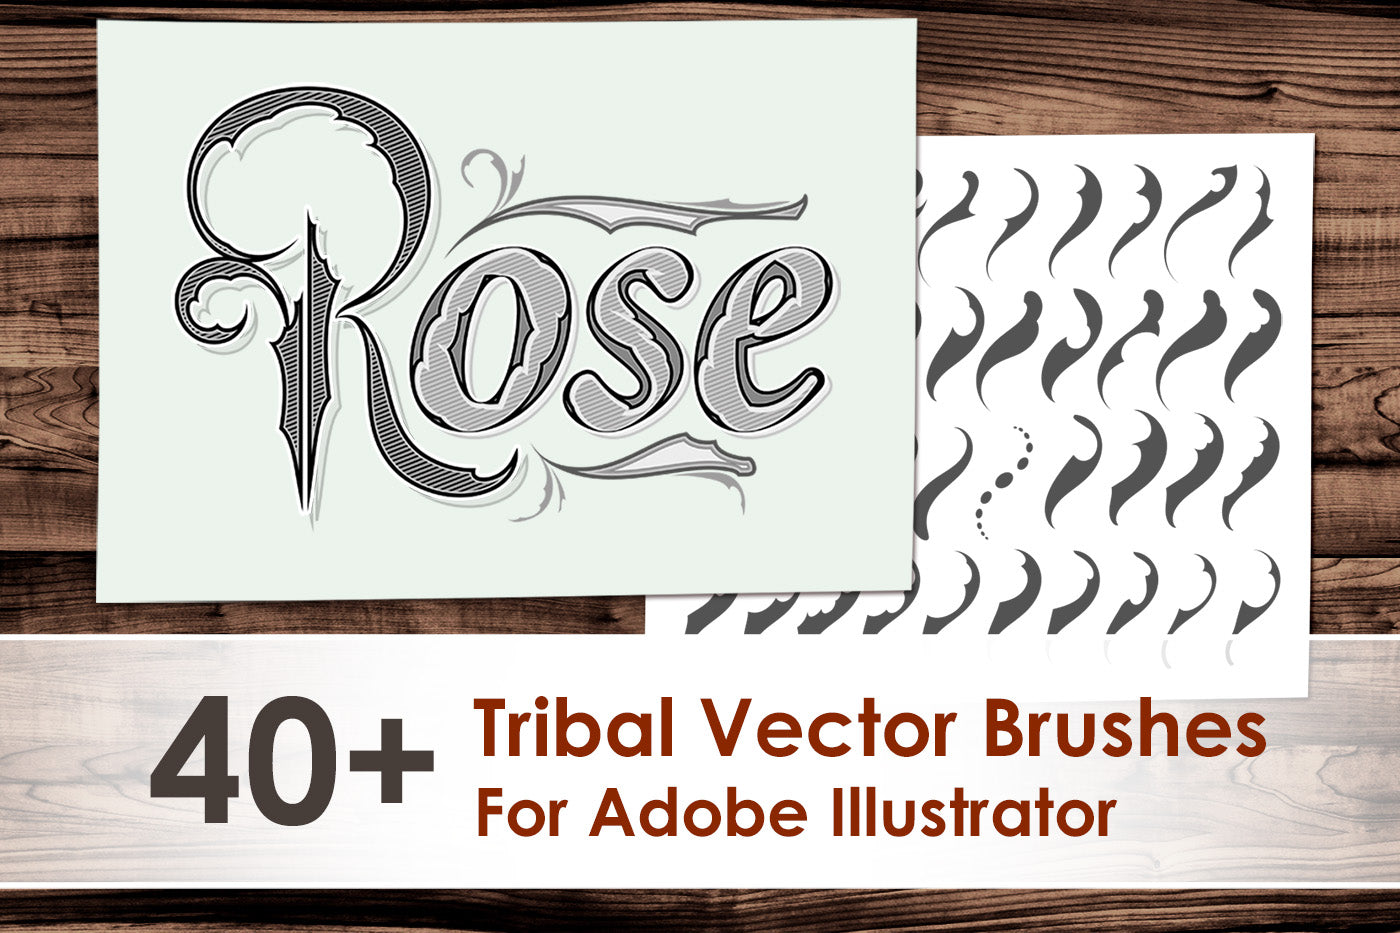 Tribal Vector Brushes for Adobe Illustrator